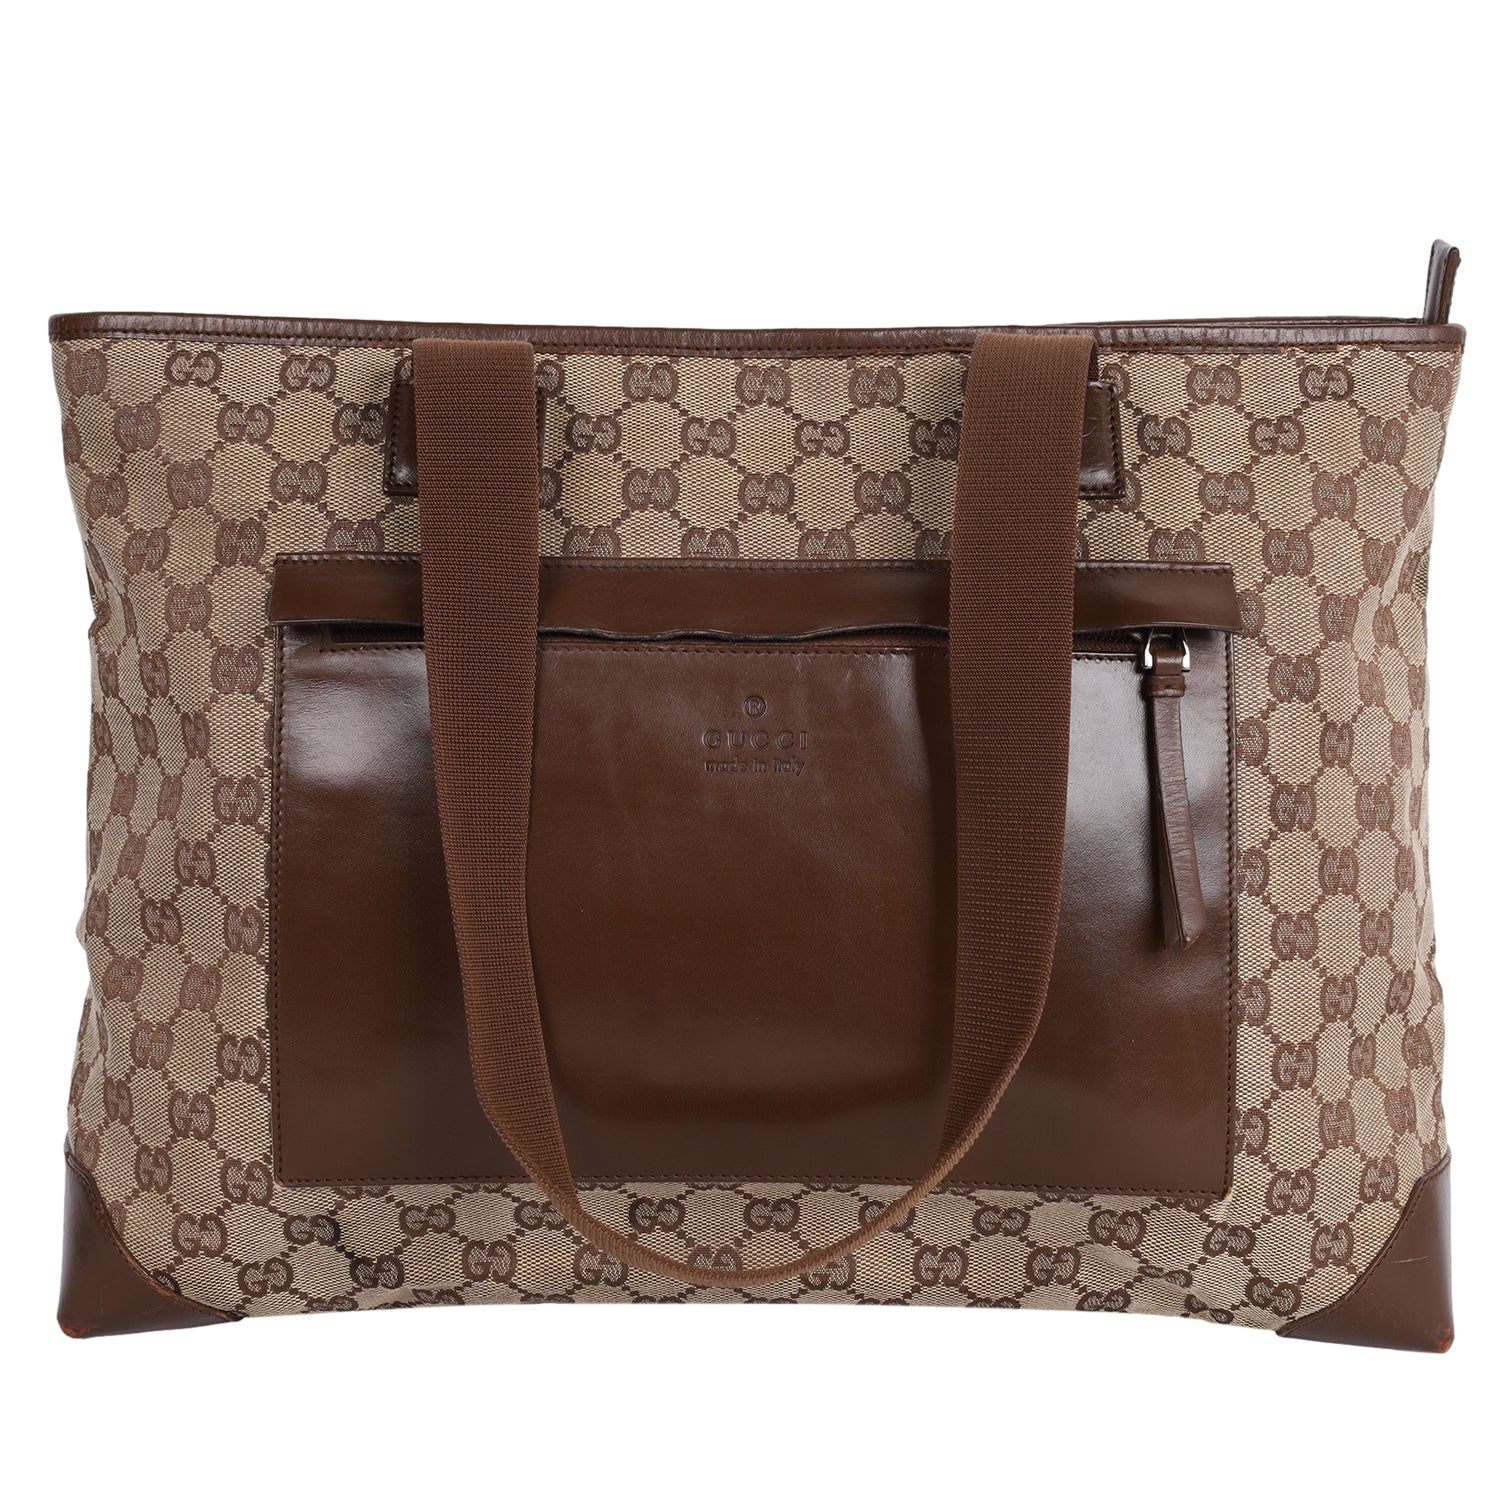 Gucci Gucci Brown Monogram Canvas Tote Handbag